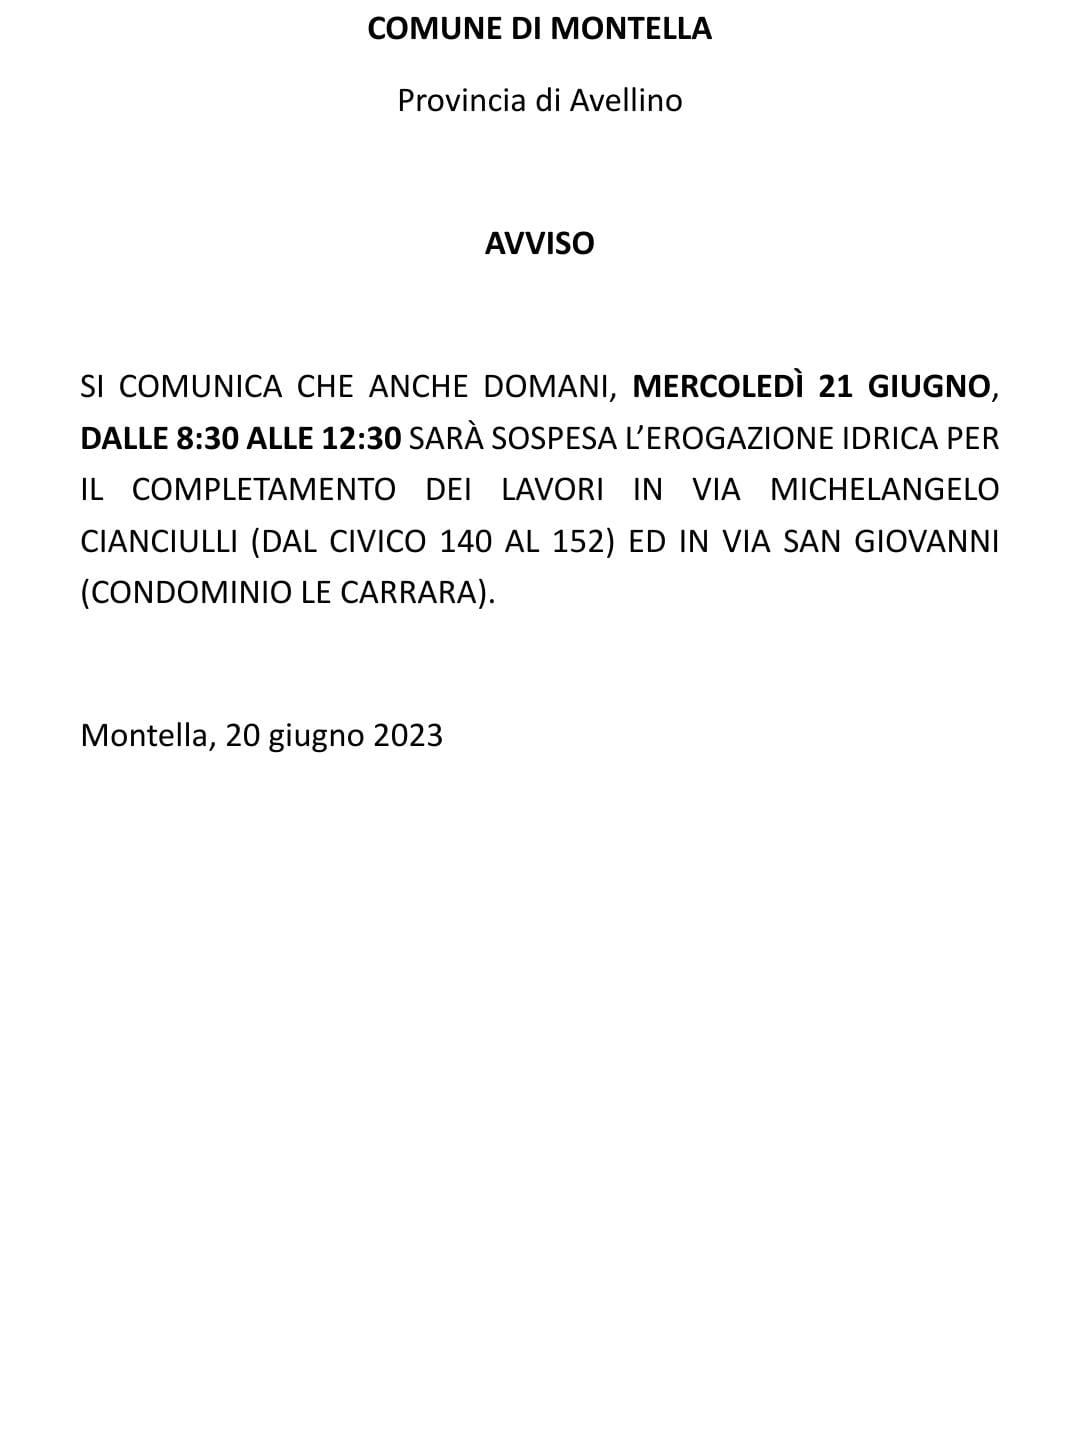 Sospensione erogazione idrica Via M. Cianciulli (140-152) e condominio Le Carrara